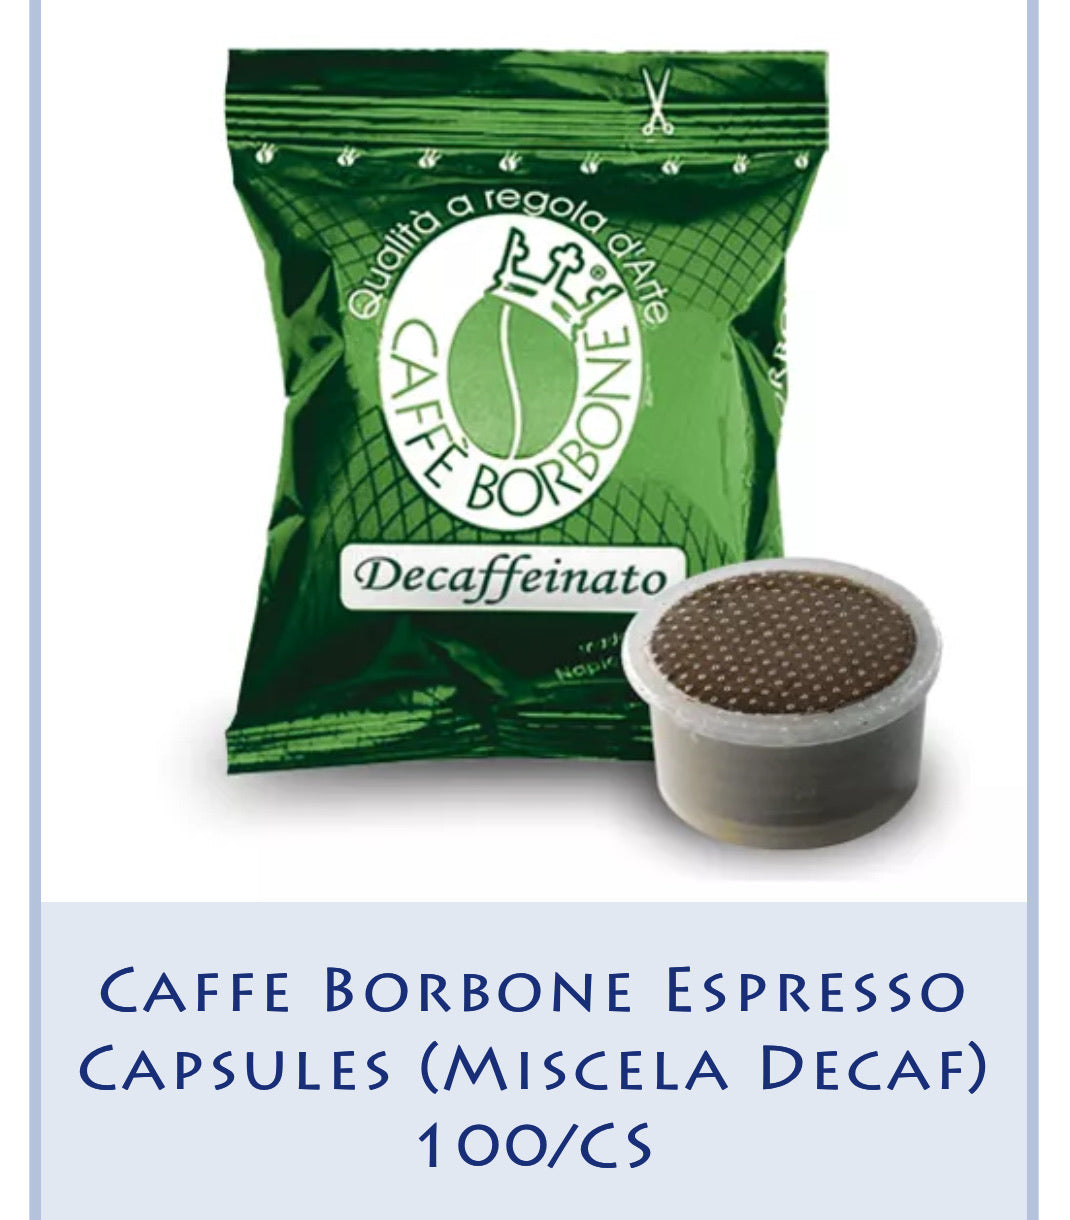 Caffè Borbone Oro compatible Nespresso®, café oro, pack de 100